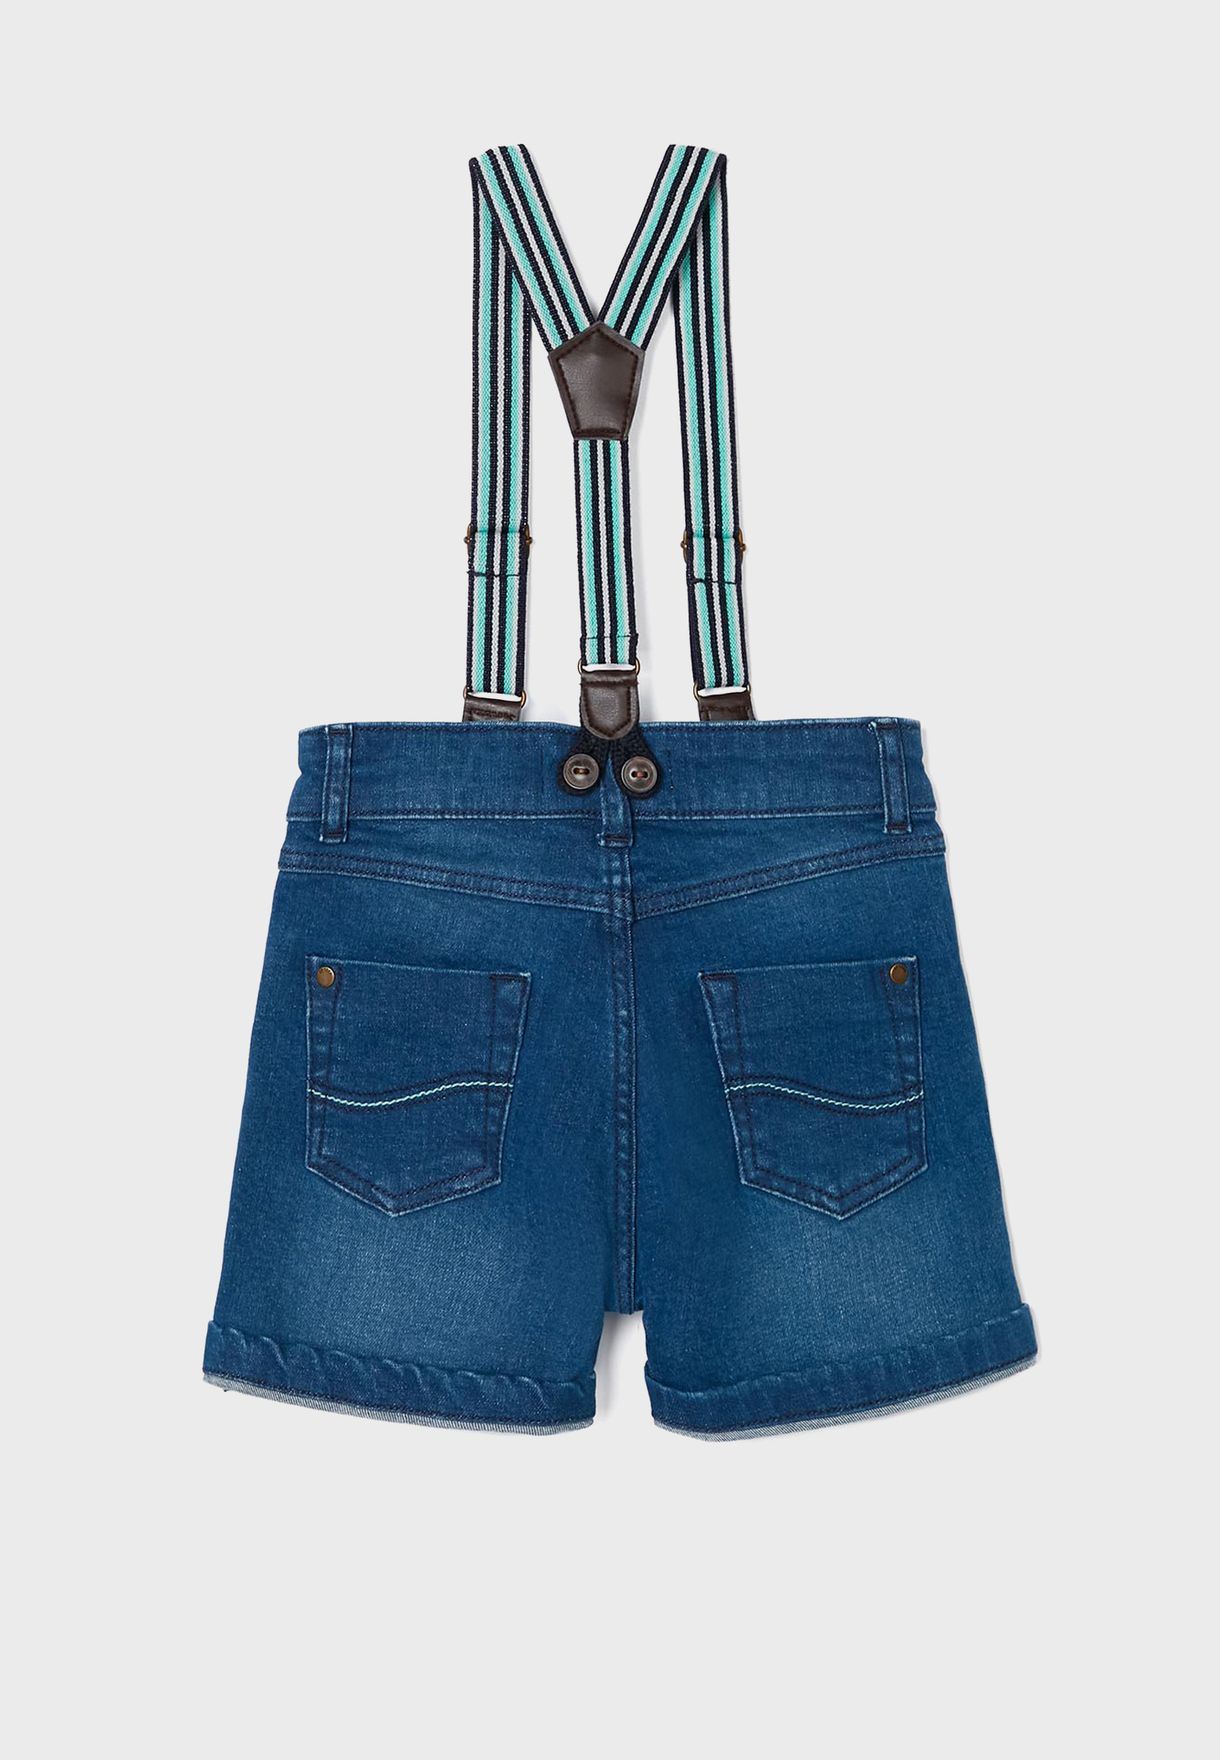 Kids Denim Shorts With Suspender